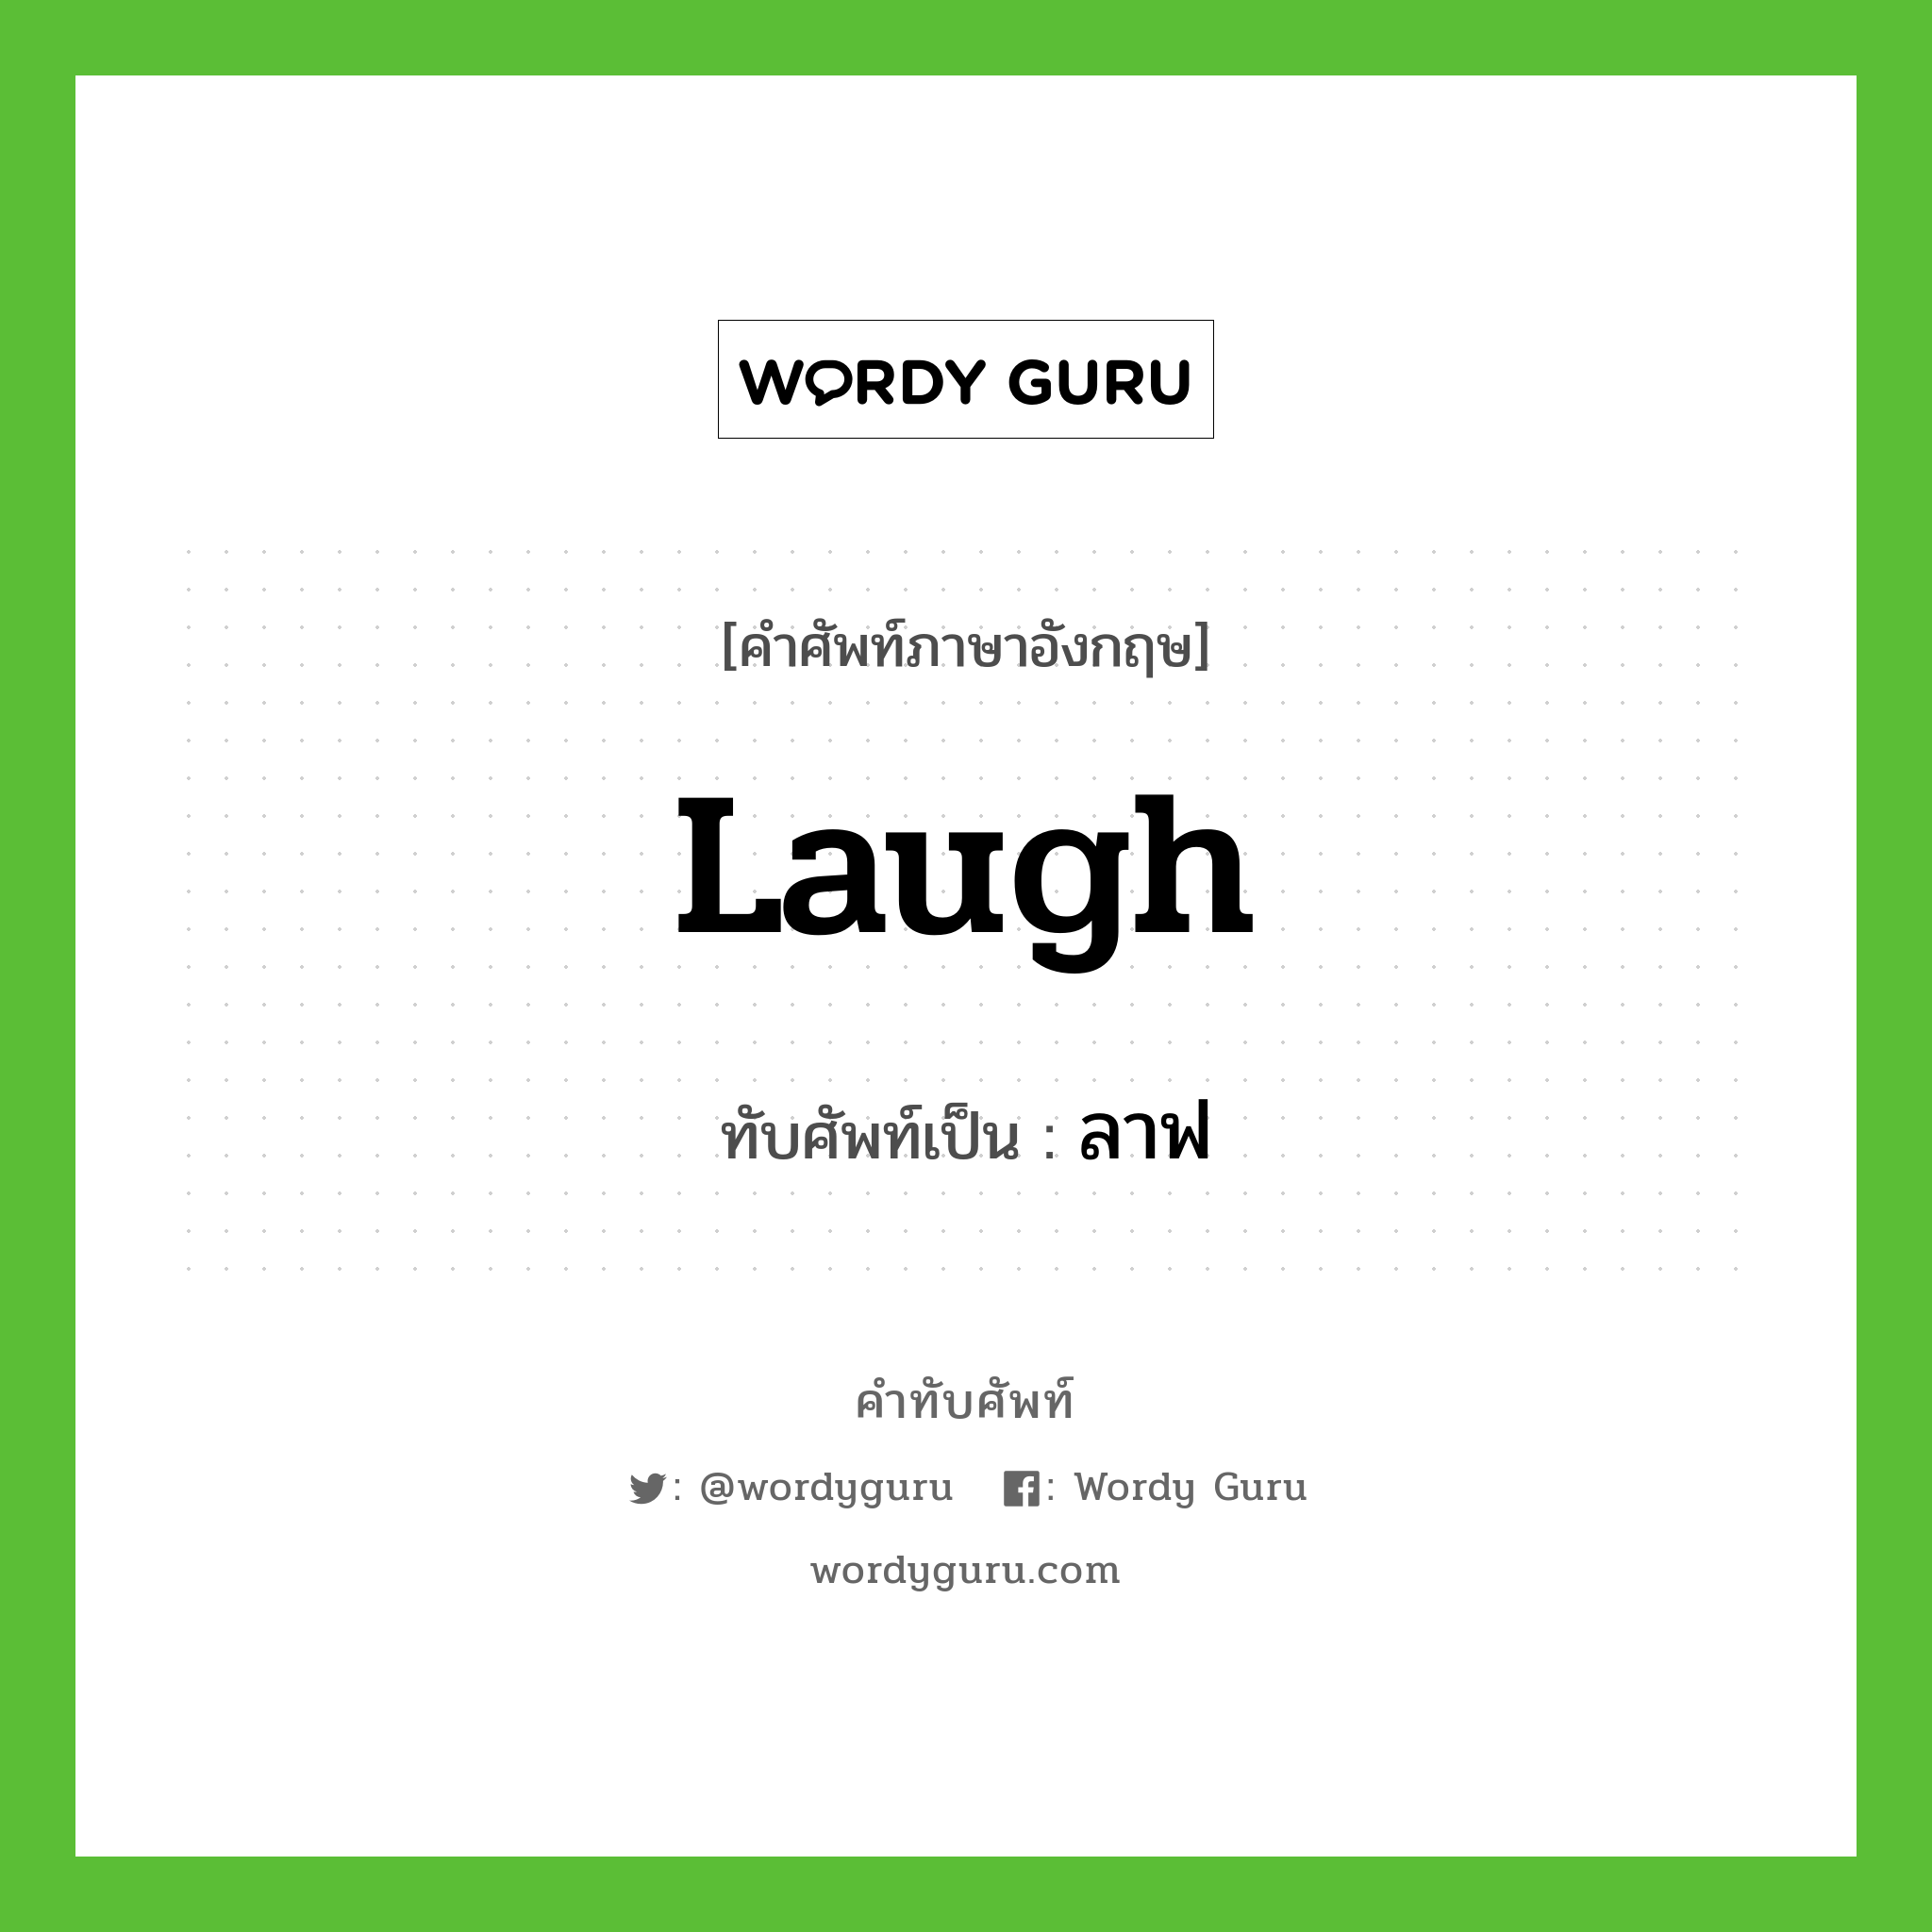 laugh เขียนเป็นคำไทยว่าอะไร?, คำศัพท์ภาษาอังกฤษ laugh ทับศัพท์เป็น ลาฟ